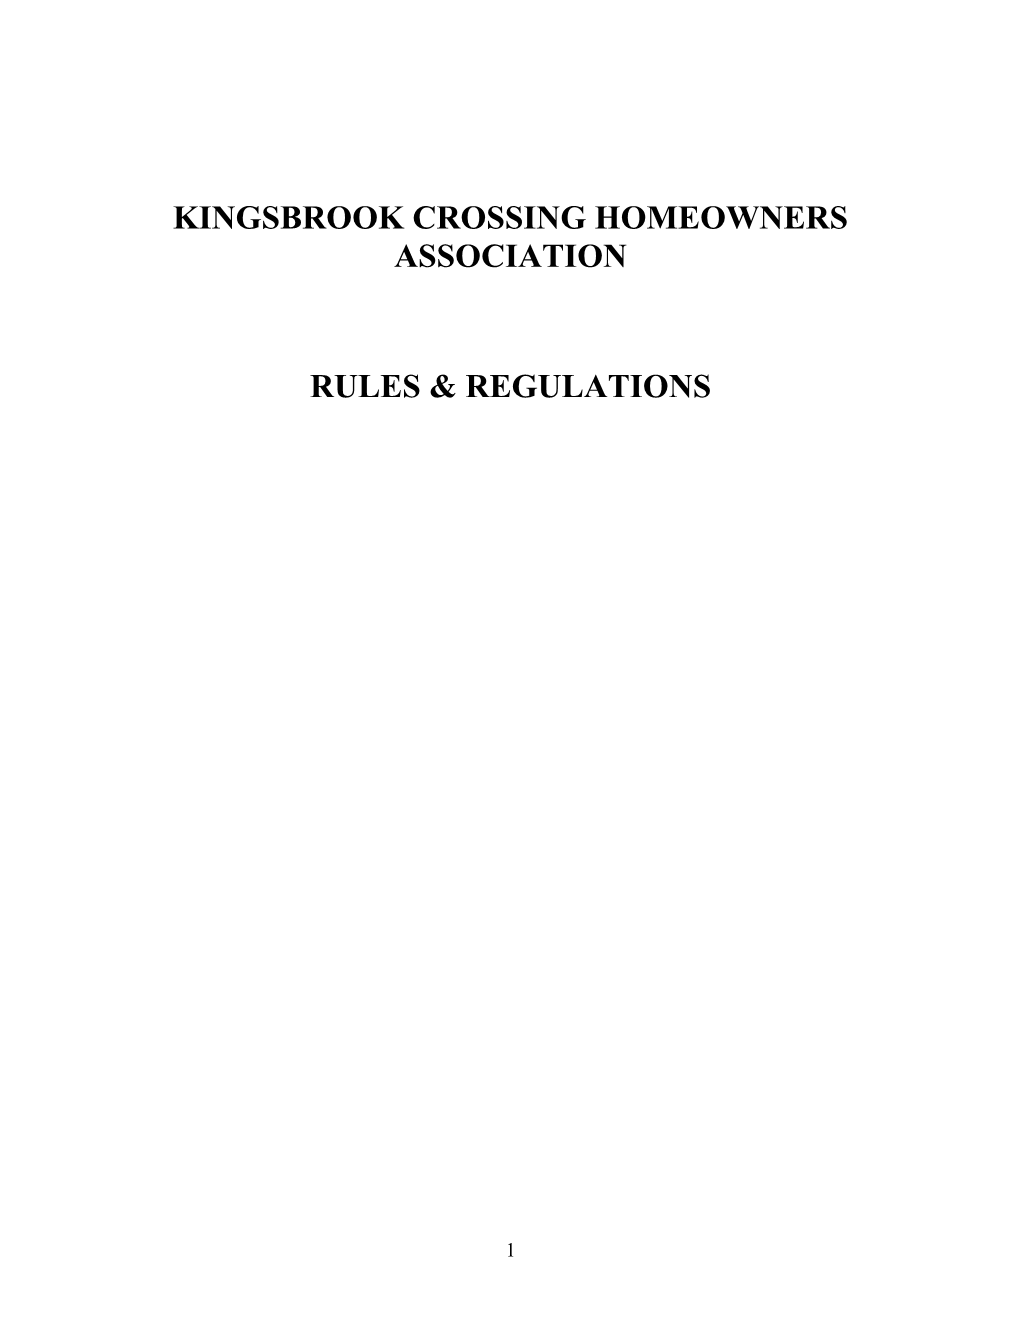 Kingsbrook Crossing Homeowners Association